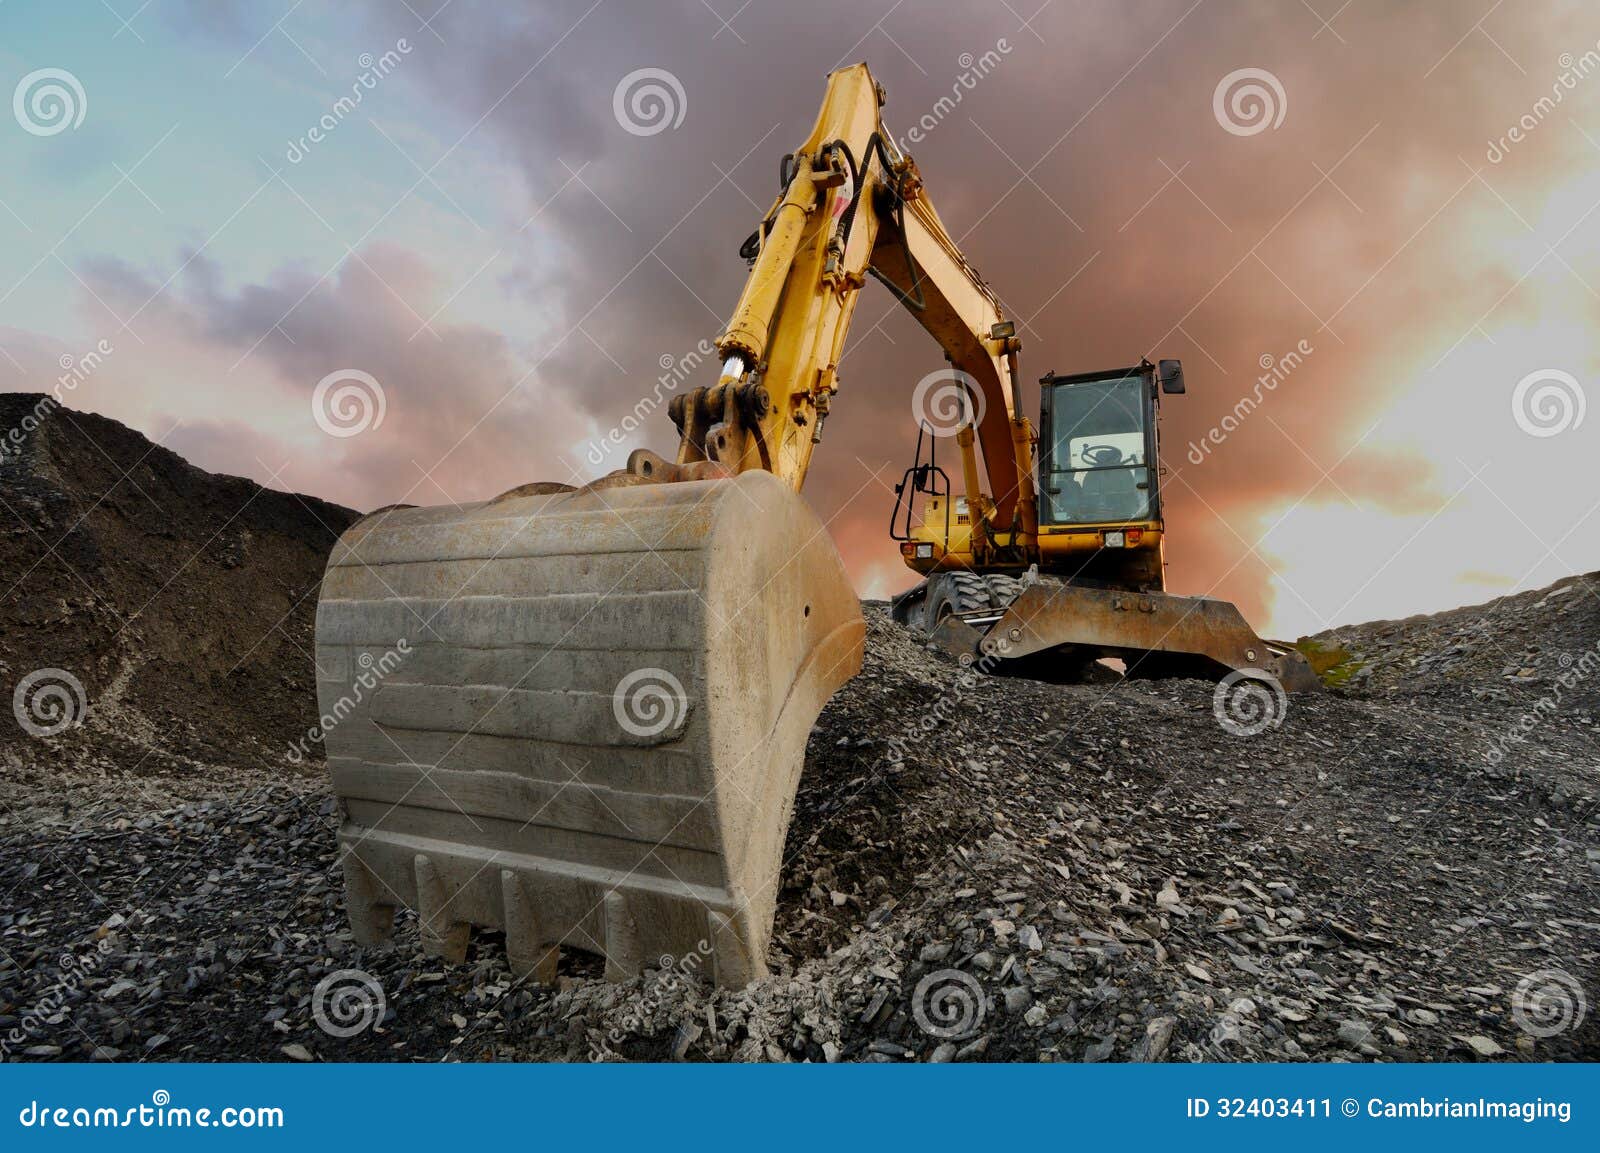 quarry excavator